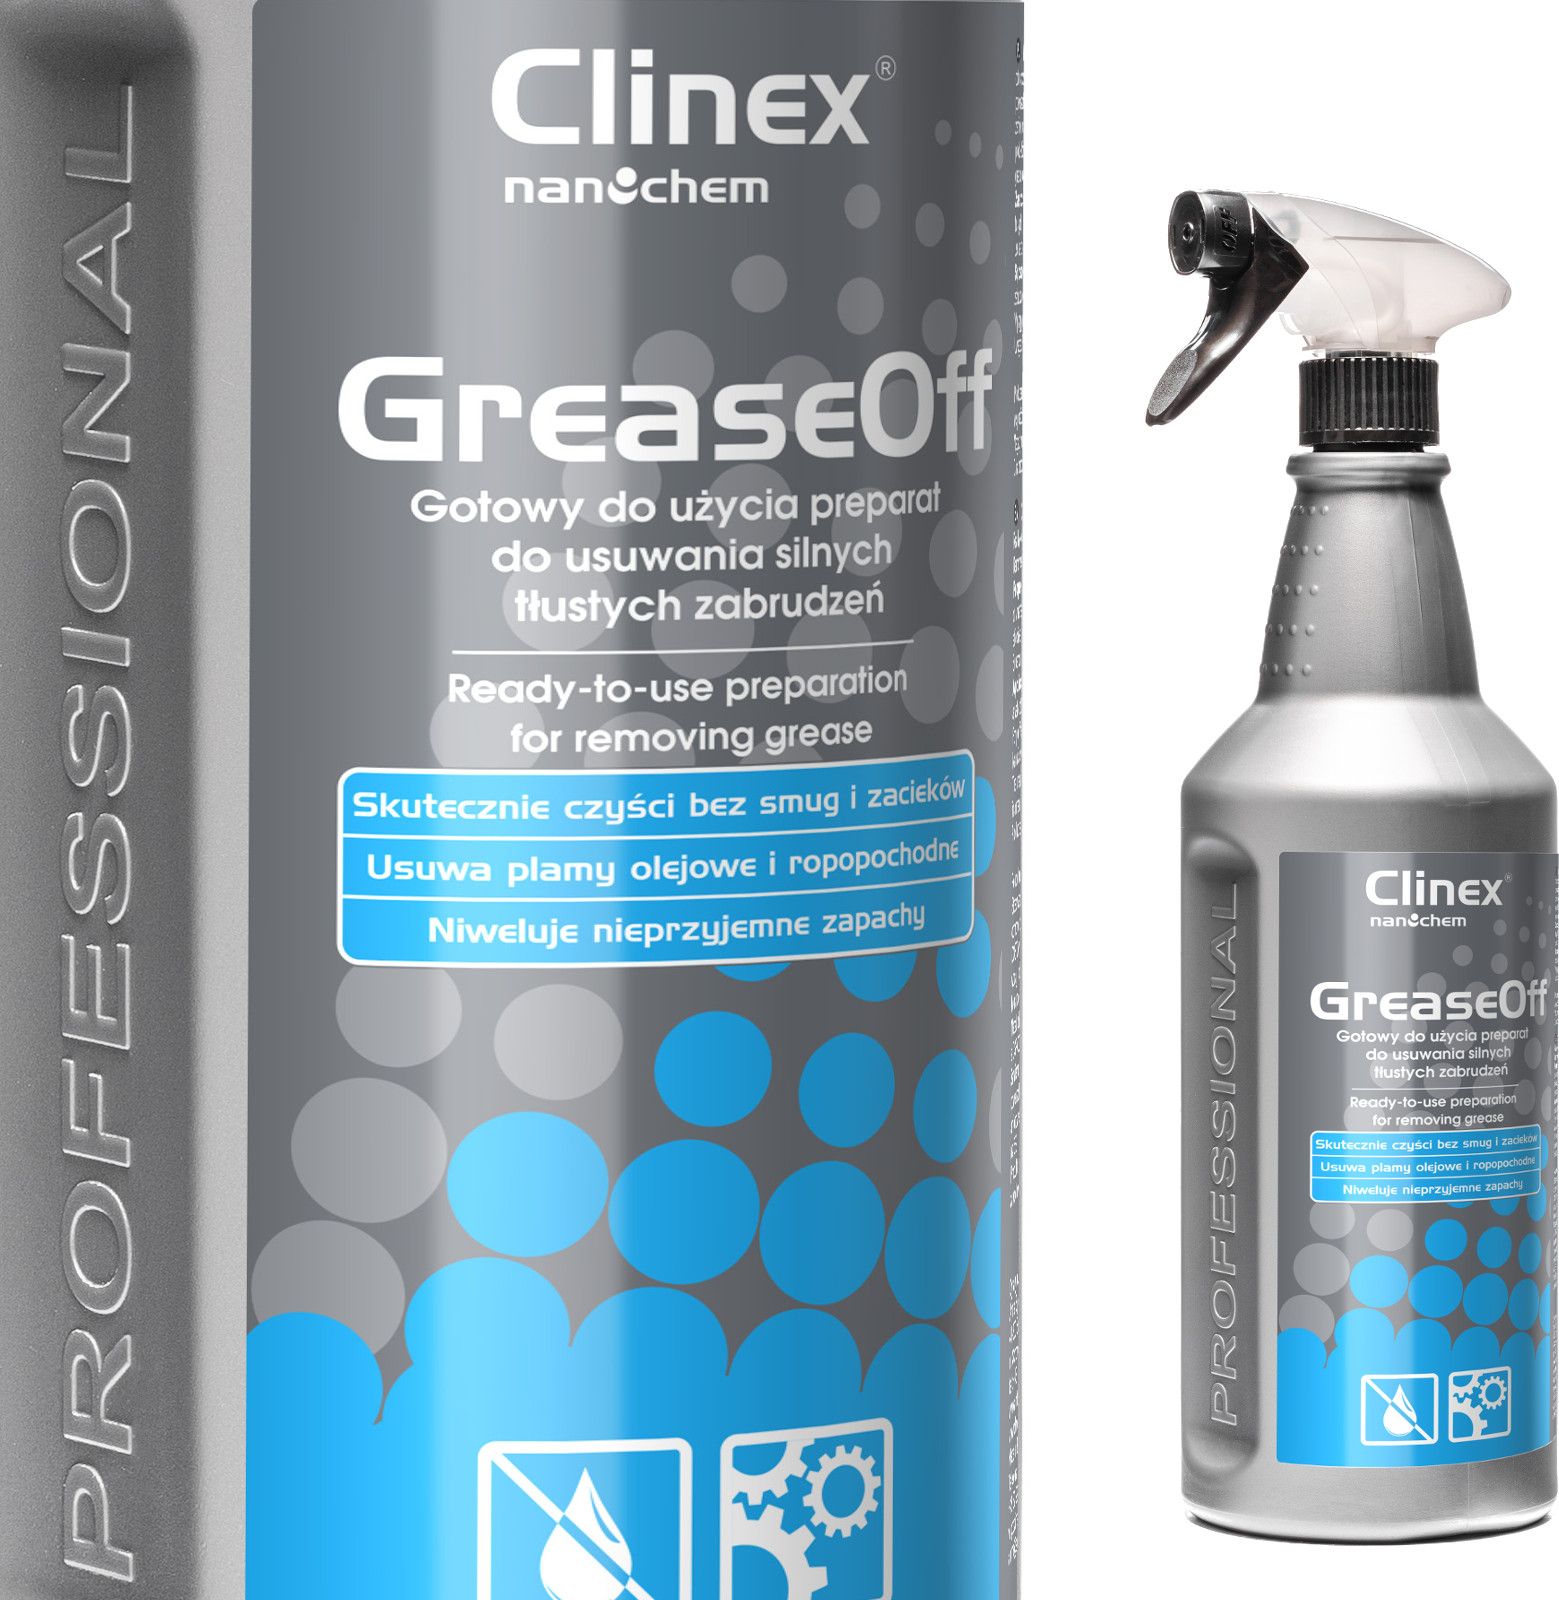 Clinex Odtluszczacz srodek do usuwania silnych tlustych zabrudzen CLINEX GreaseOff 1L Odtluszczacz srodek do usuwania silnych tlustych zabru Sadzīves ķīmija